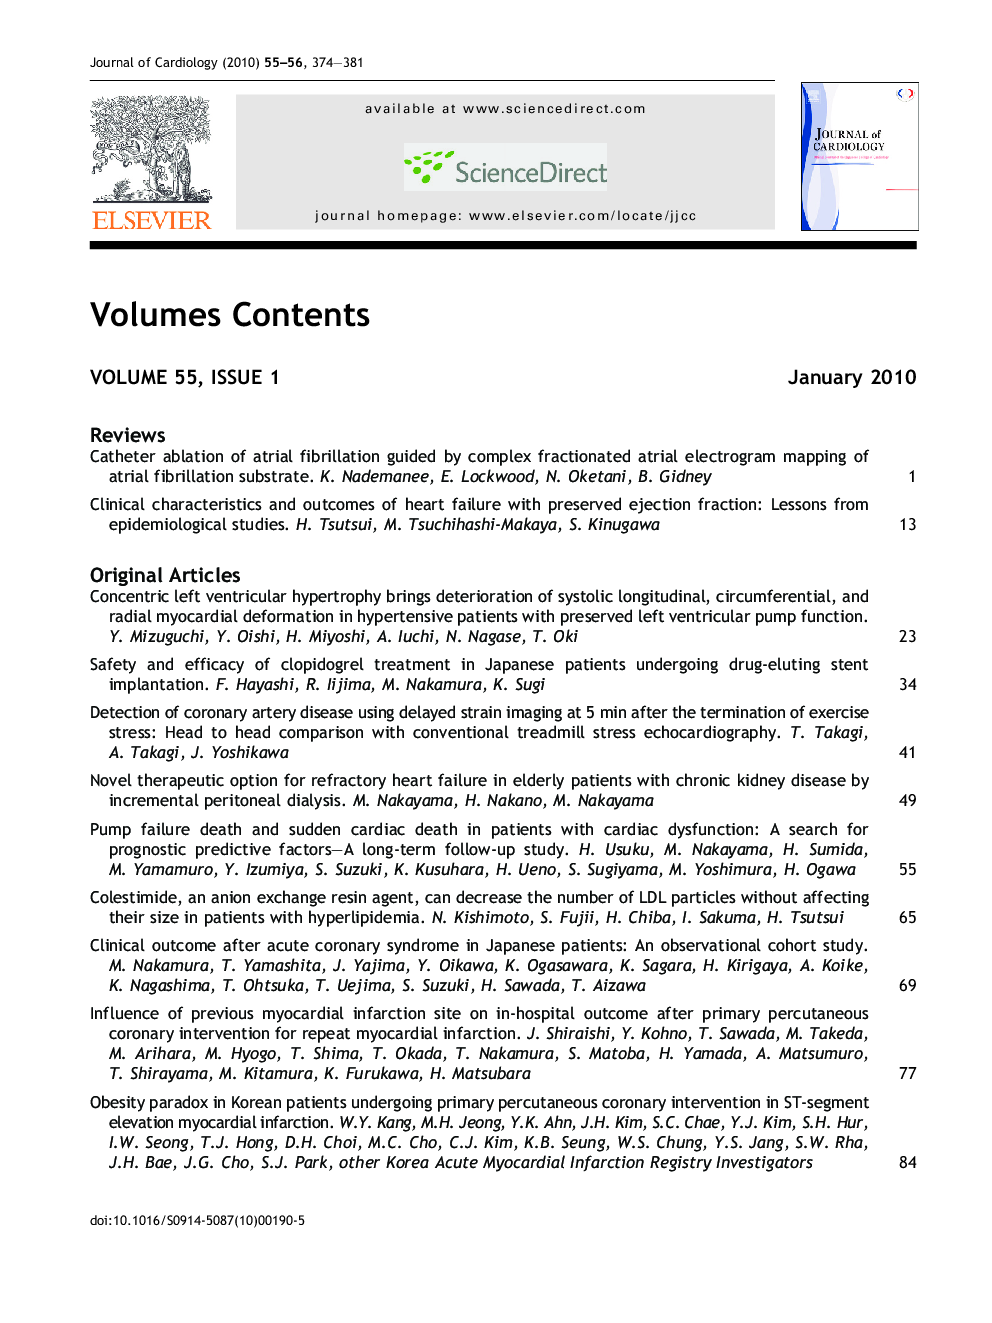 Volume contents (2010, volume 55-56)